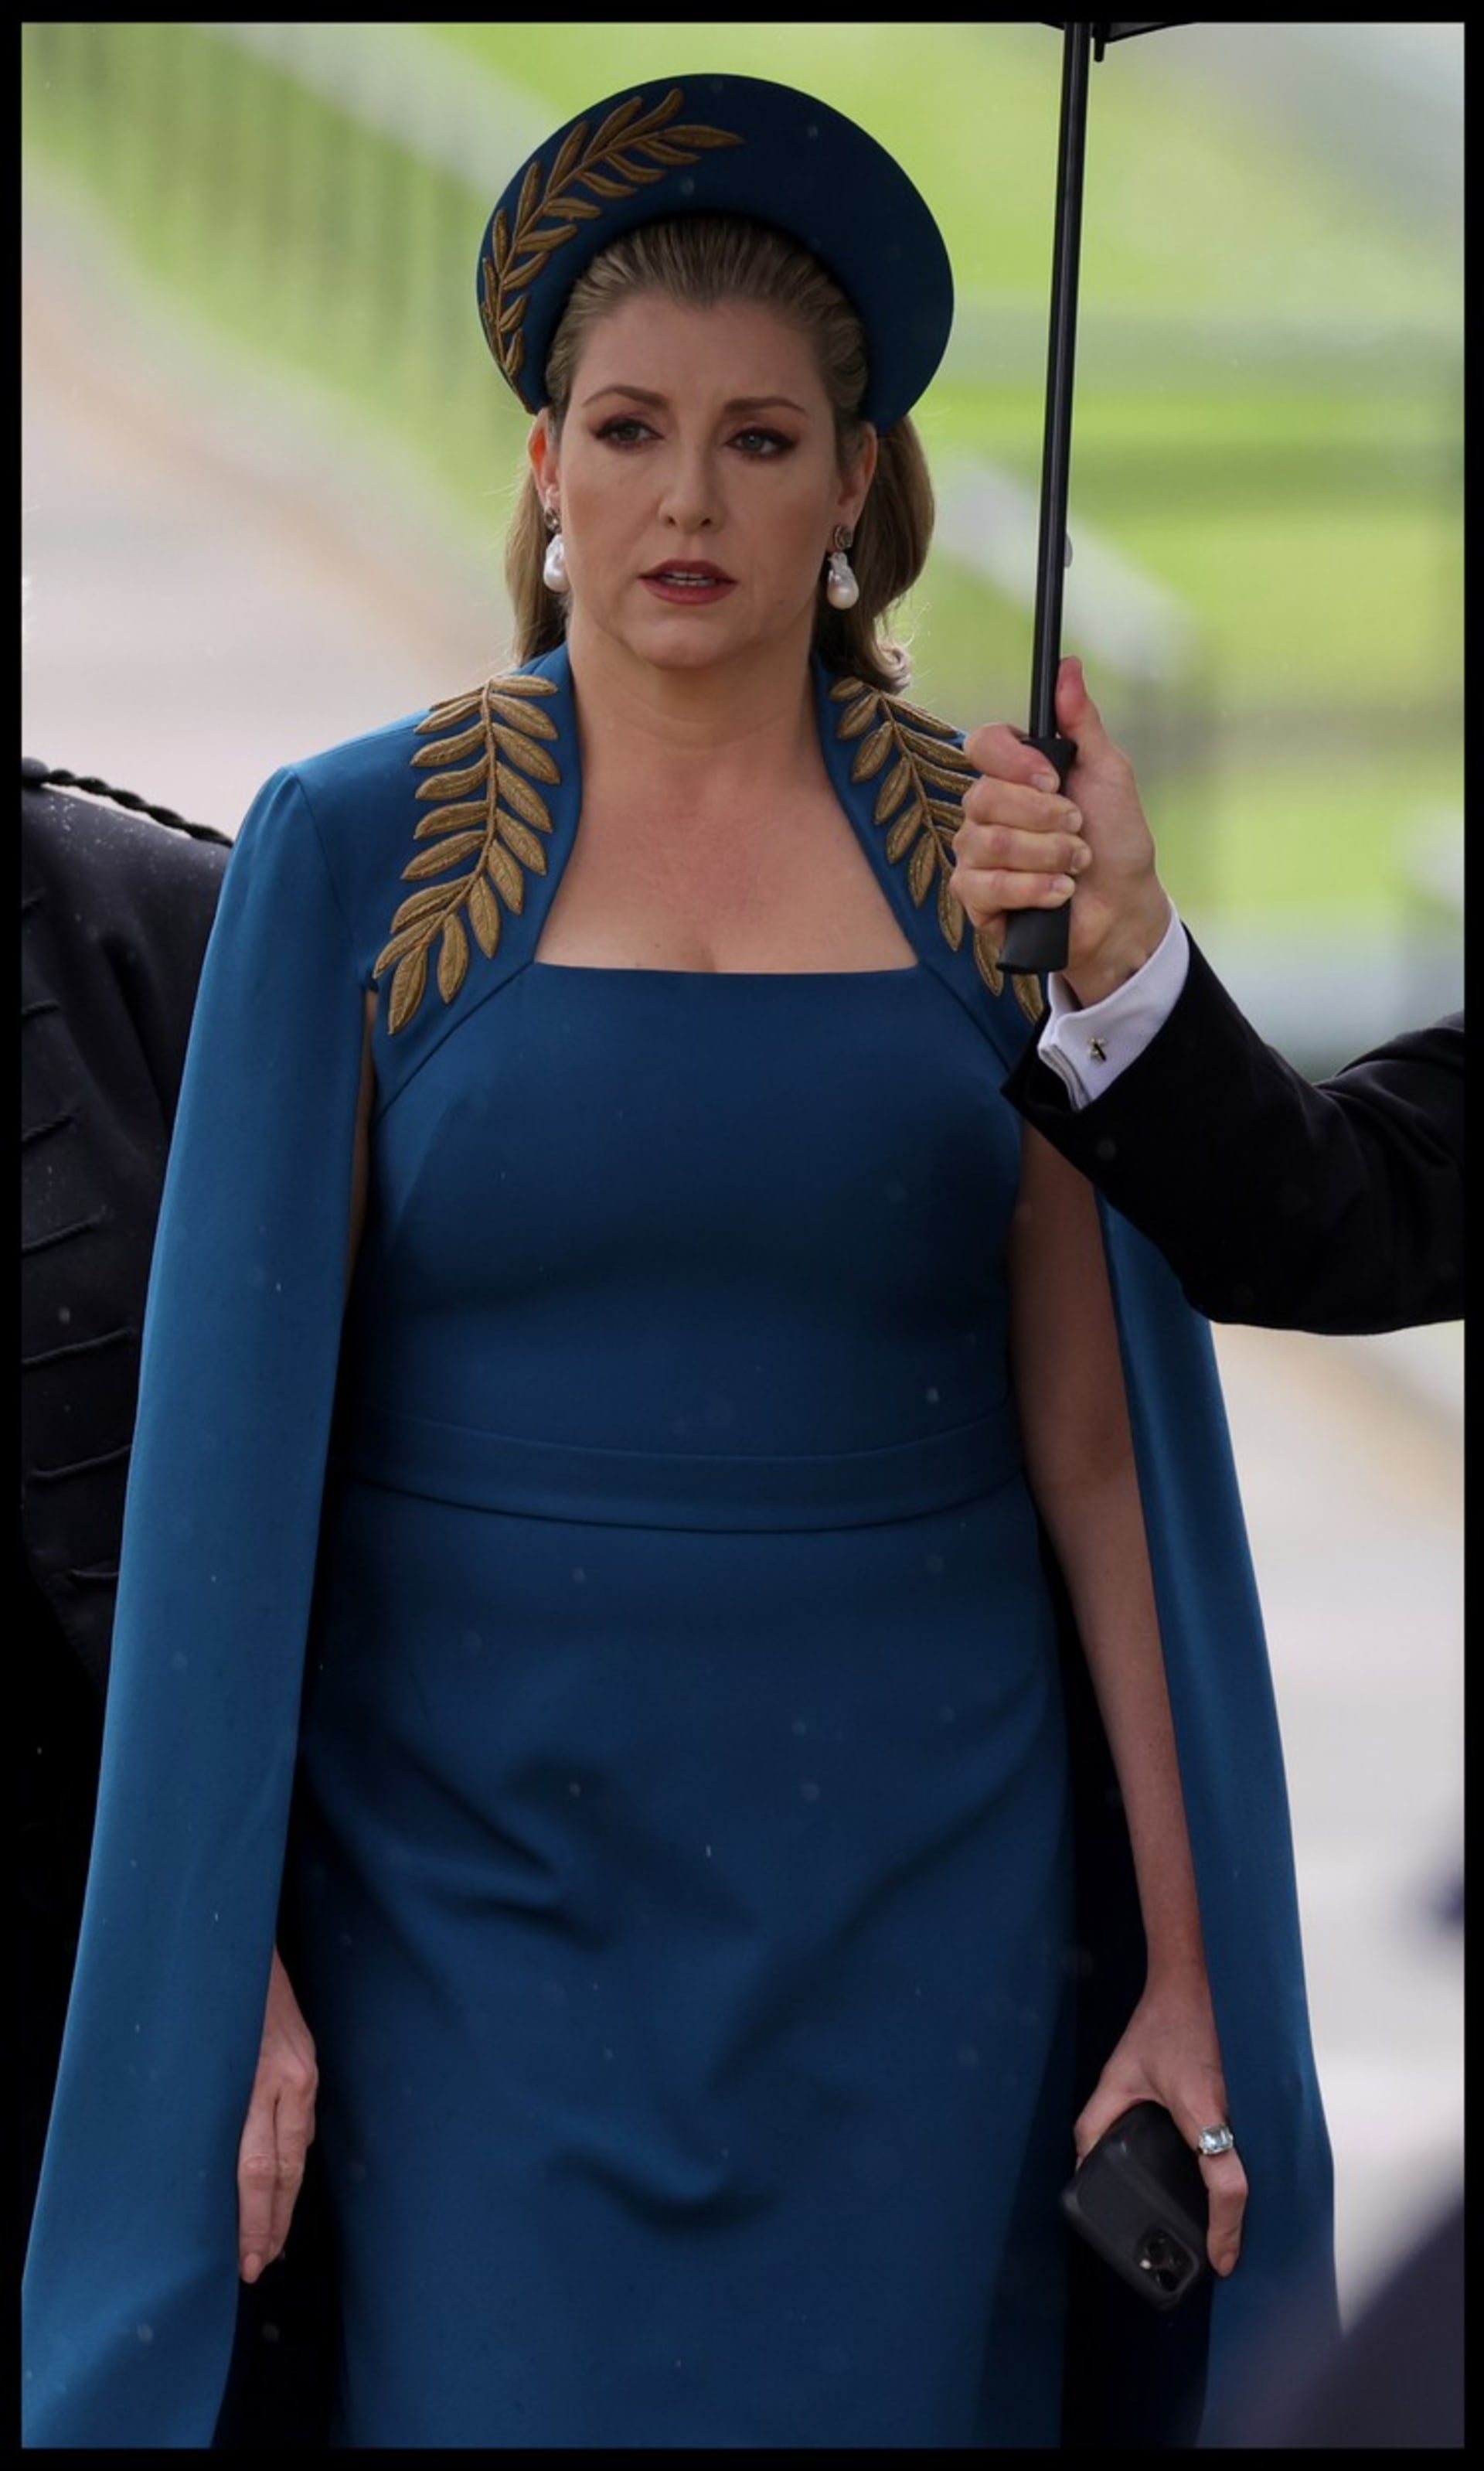 Politička na korunovaci dorazila v překrásných modrých šatech.